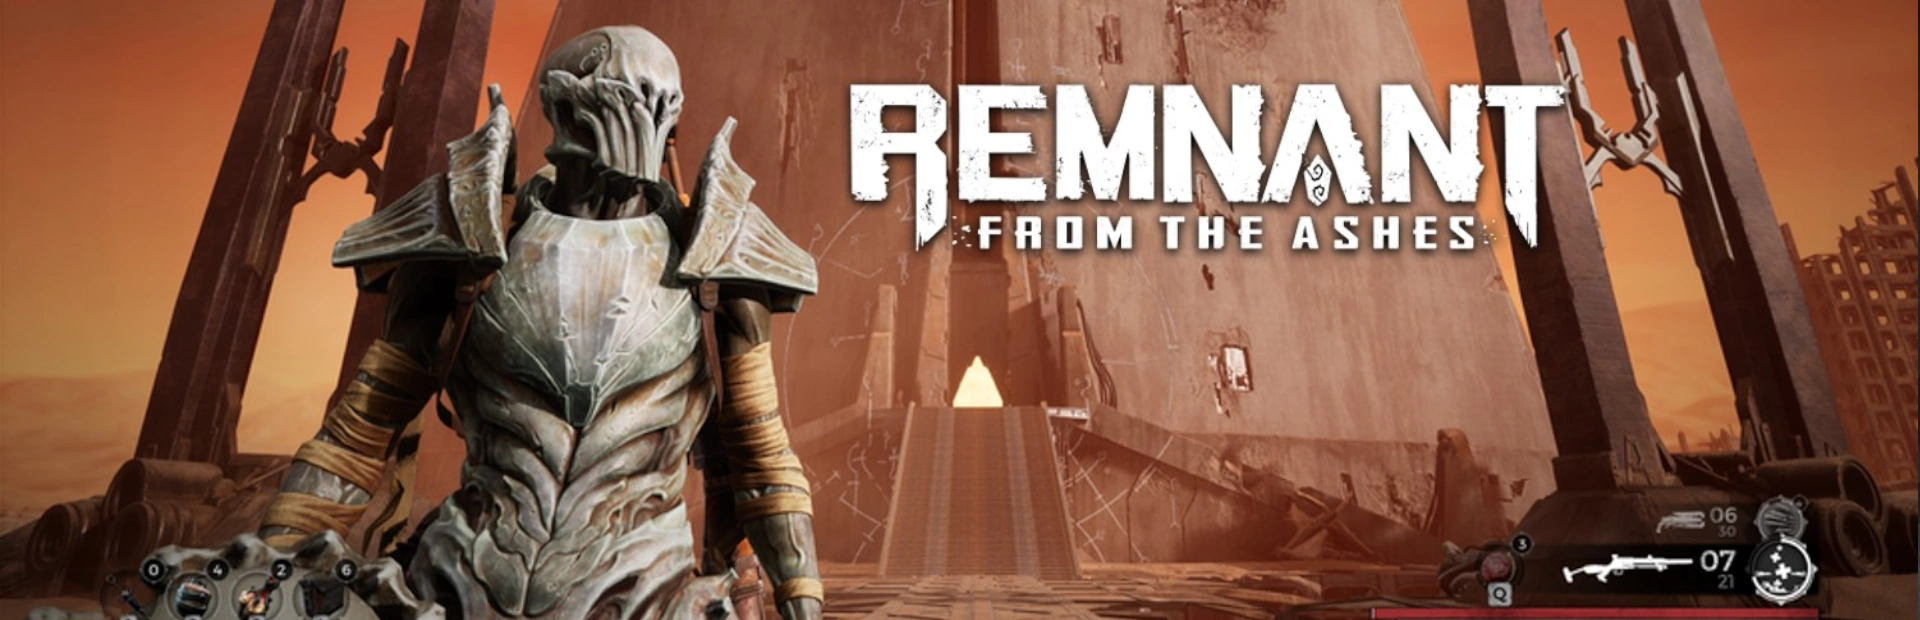 دانلود بازی Remnant: From the Ashes برای کامپیوتر | گیمباتو